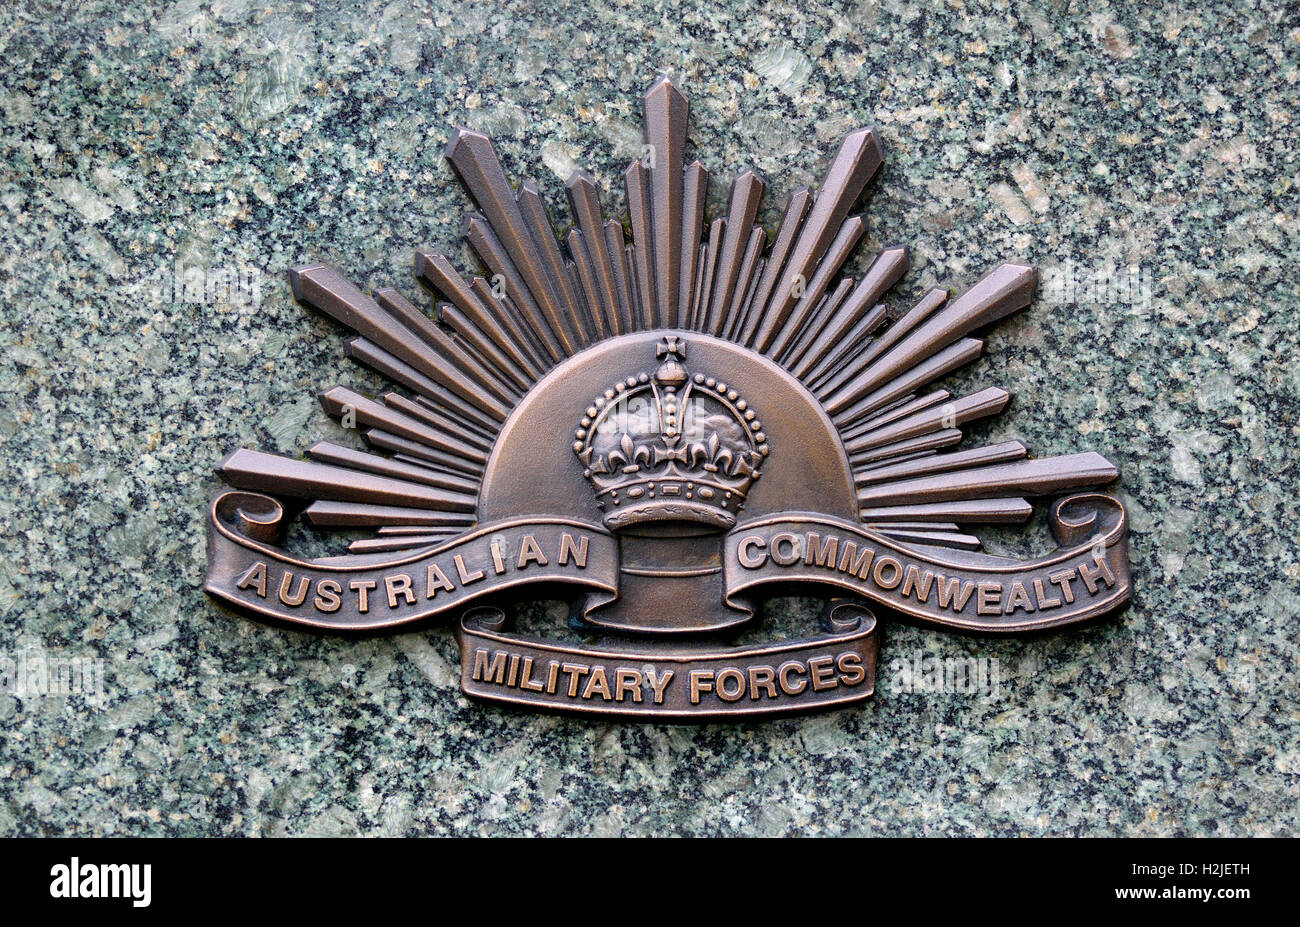 Londres, Angleterre, Royaume-Uni. Australian War Memorial à Hyde Park Corner. Détail : l'insigne de l'Australian Commonwealth Forces Militaires Banque D'Images